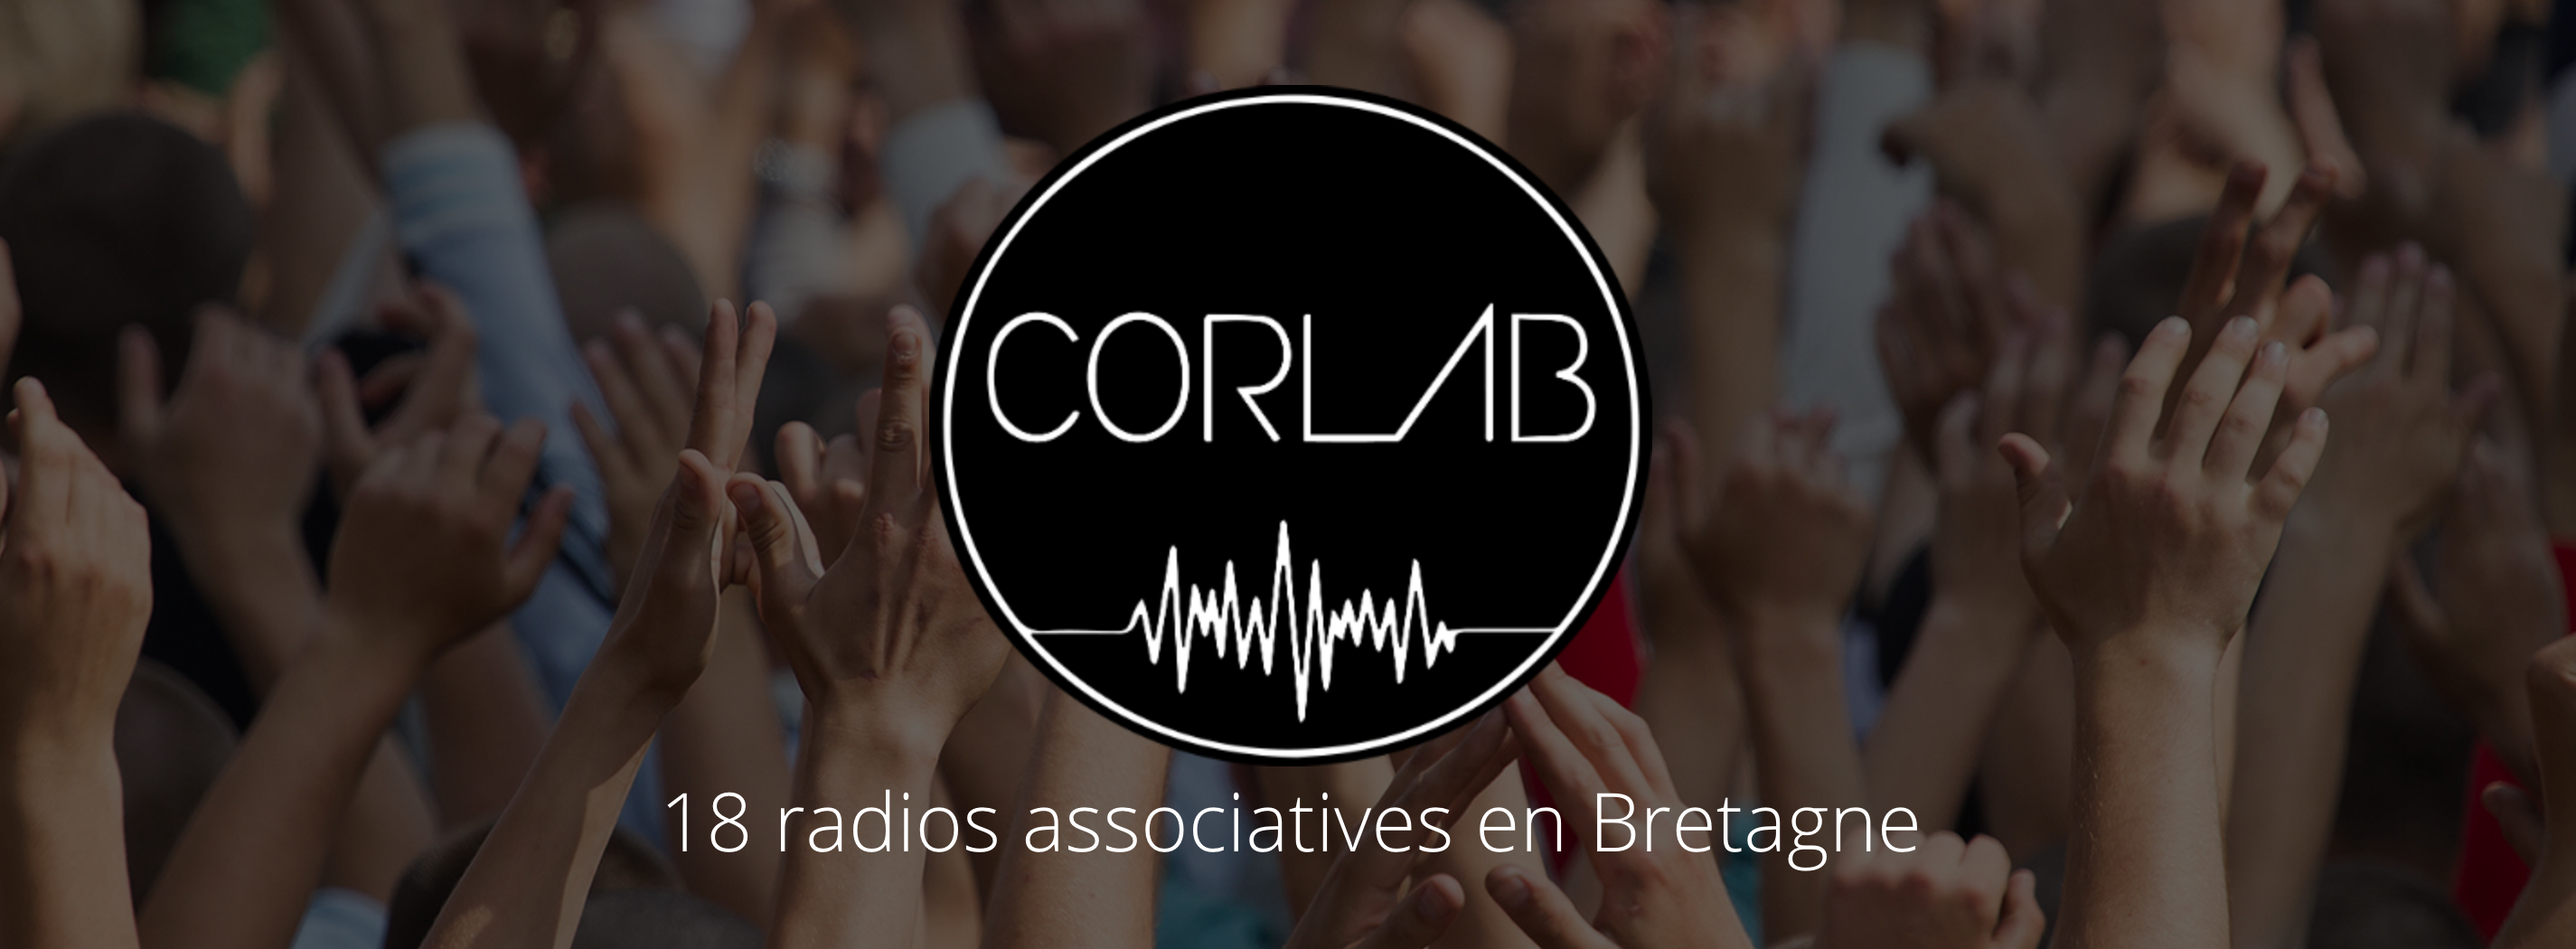 Covid-19 : l’utilité sociale des radios associatives à l'heure de la crise sanitaire